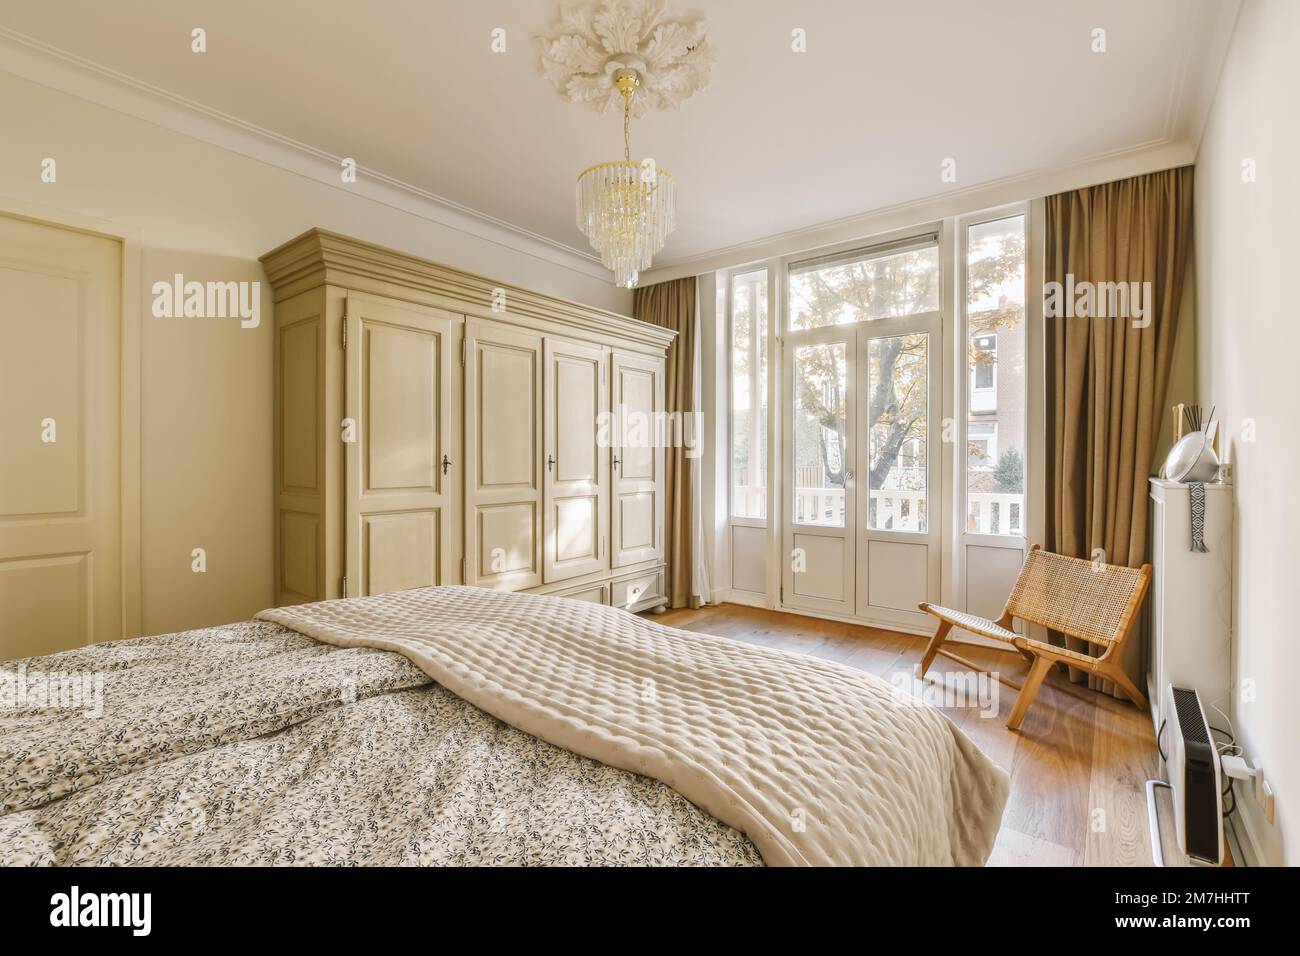 Ein Schlafzimmer mit einem Bett, Stuhl und Schränken im Zimmer, wo es eine Kerze an der Wand gibt Stockfoto